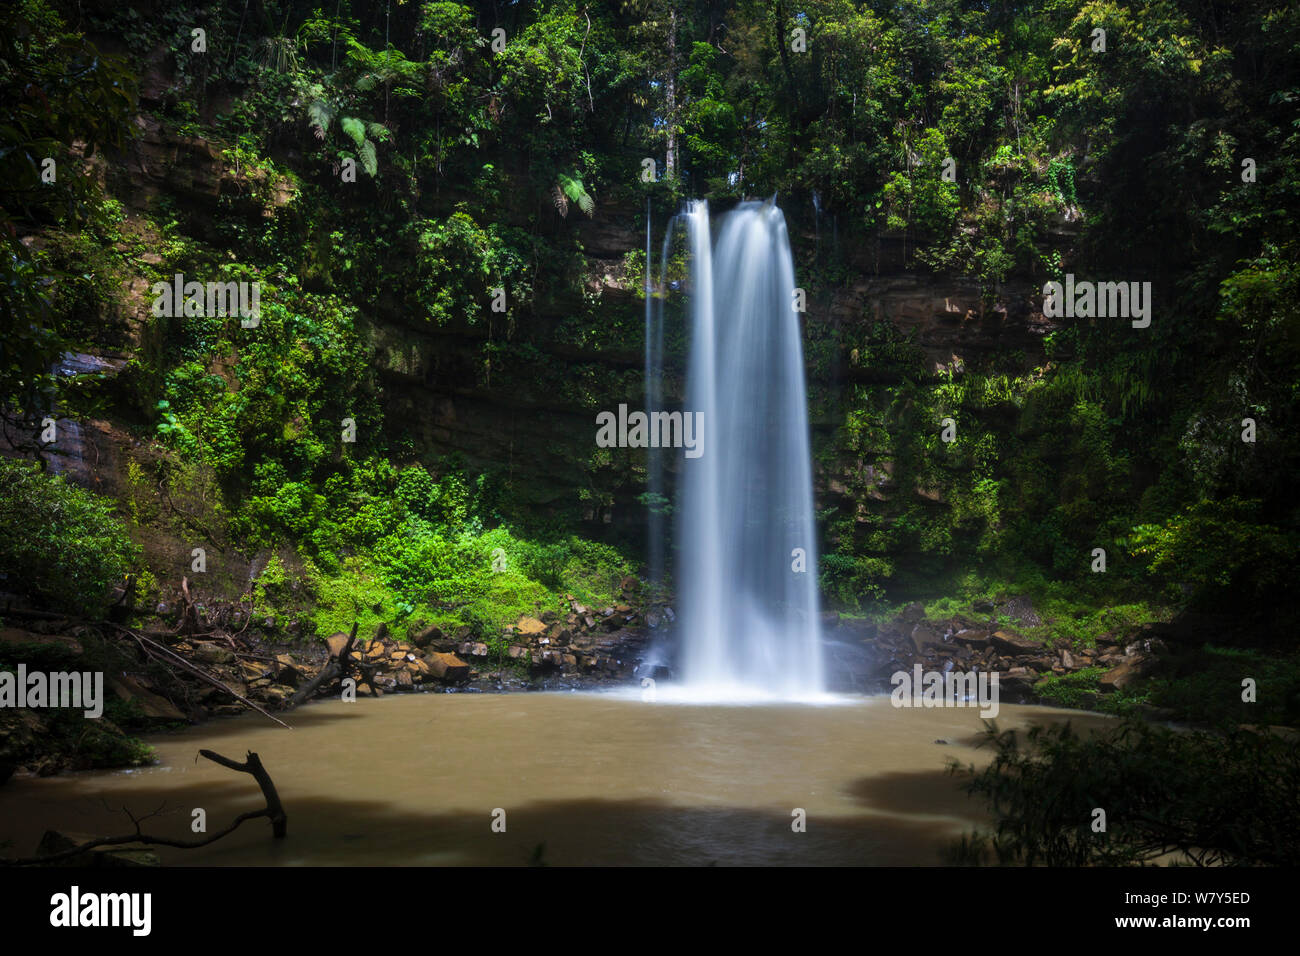 Ginseng Falls, a waterfall on a tributary of the Maliau River. Maliau Basin, Borneo, May 2011. Stock Photo